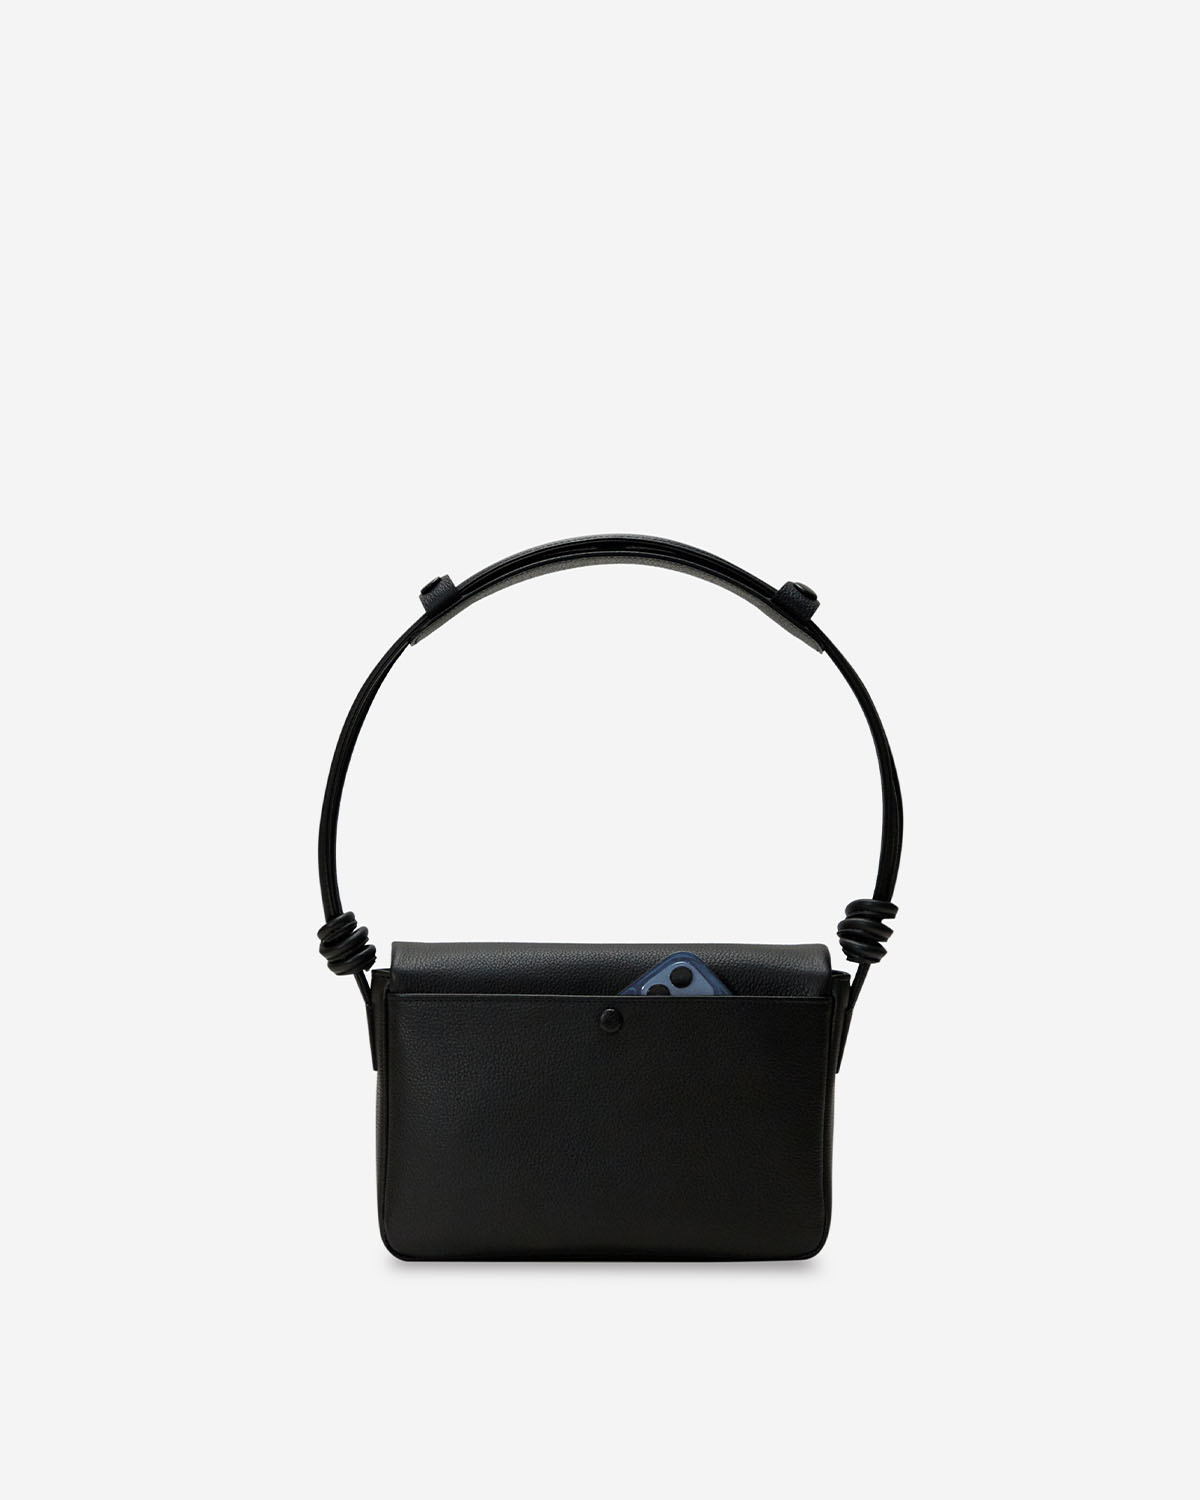 กระเป๋าสะพายข้างหนังแท้ VERA Enveloppe Leather Shoulder & Crossbody bag สี Urban Black